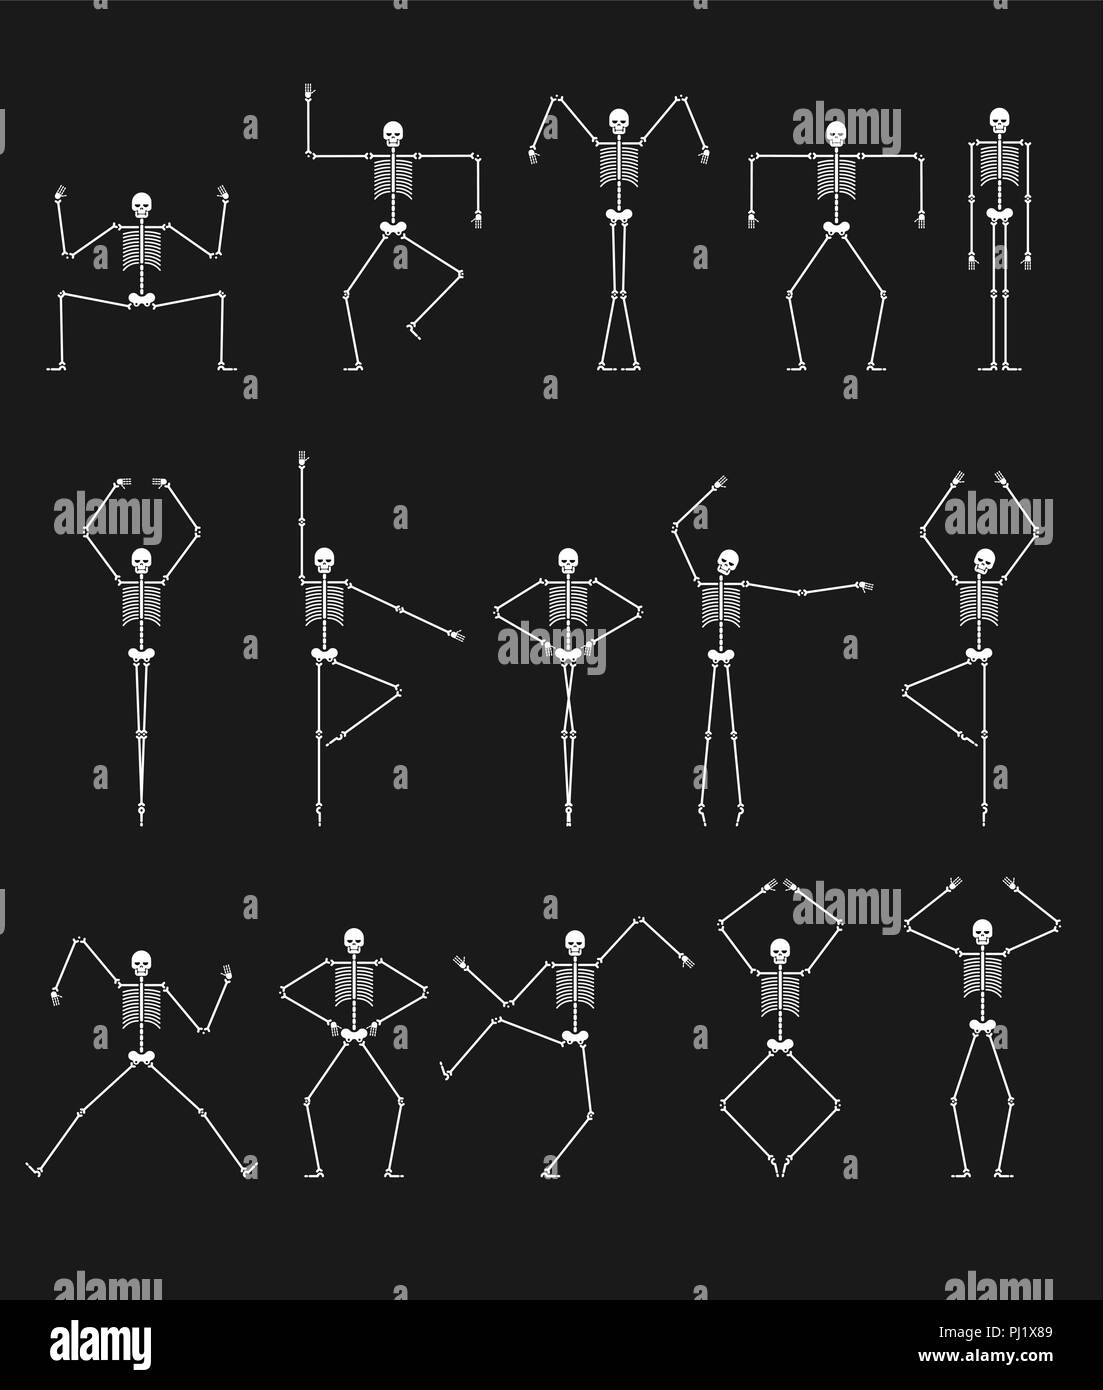 Jeu de danse squelette. Les os du crâne et des danses. Différentes poses Vector illustration. Illustration de Vecteur